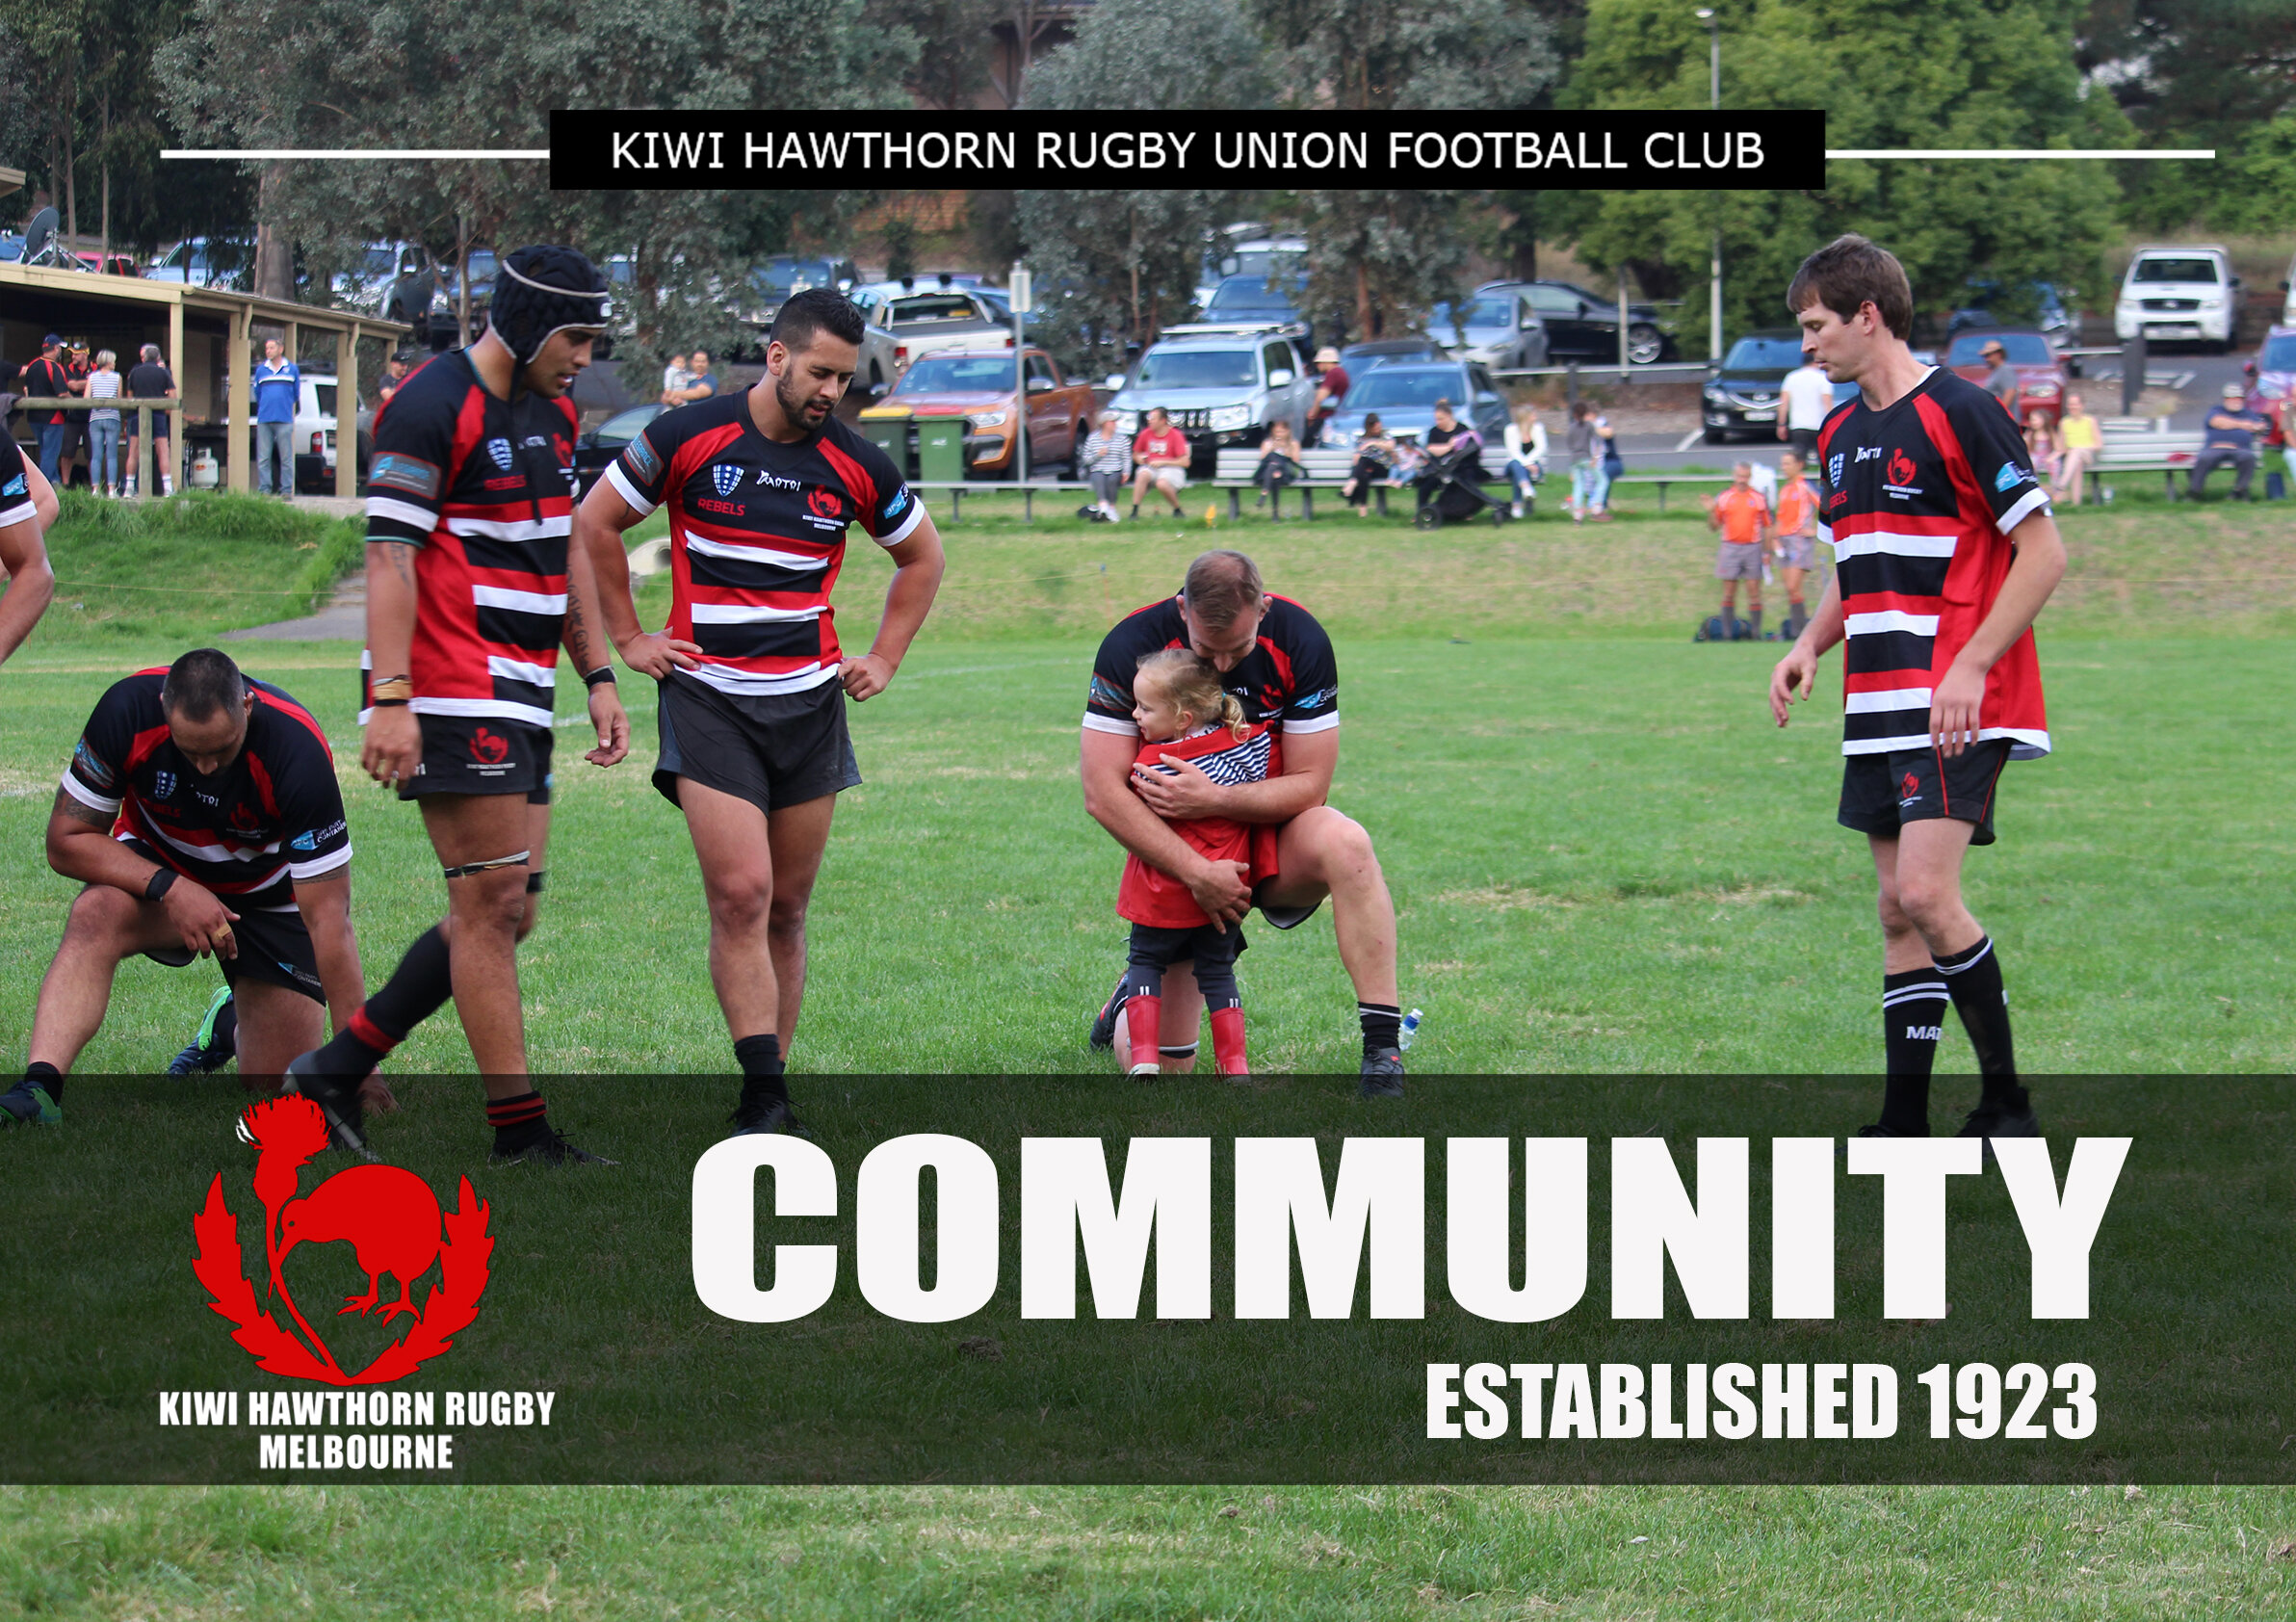 Kiwi Hawthorn Rugby Club Values Community (Copy)